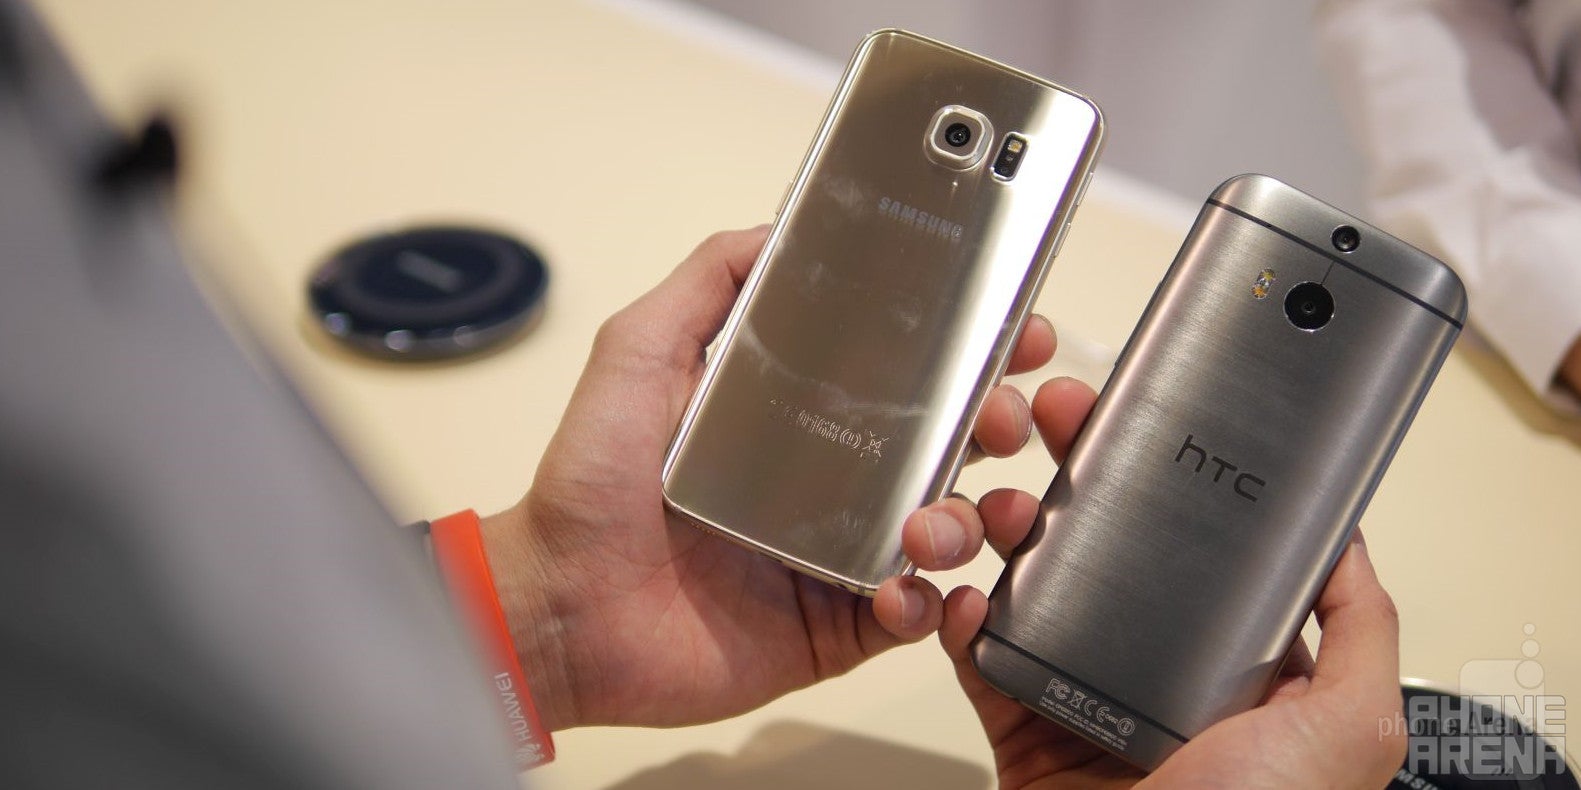 Samsung Galaxy S6 edge versus HTC One M8: first look